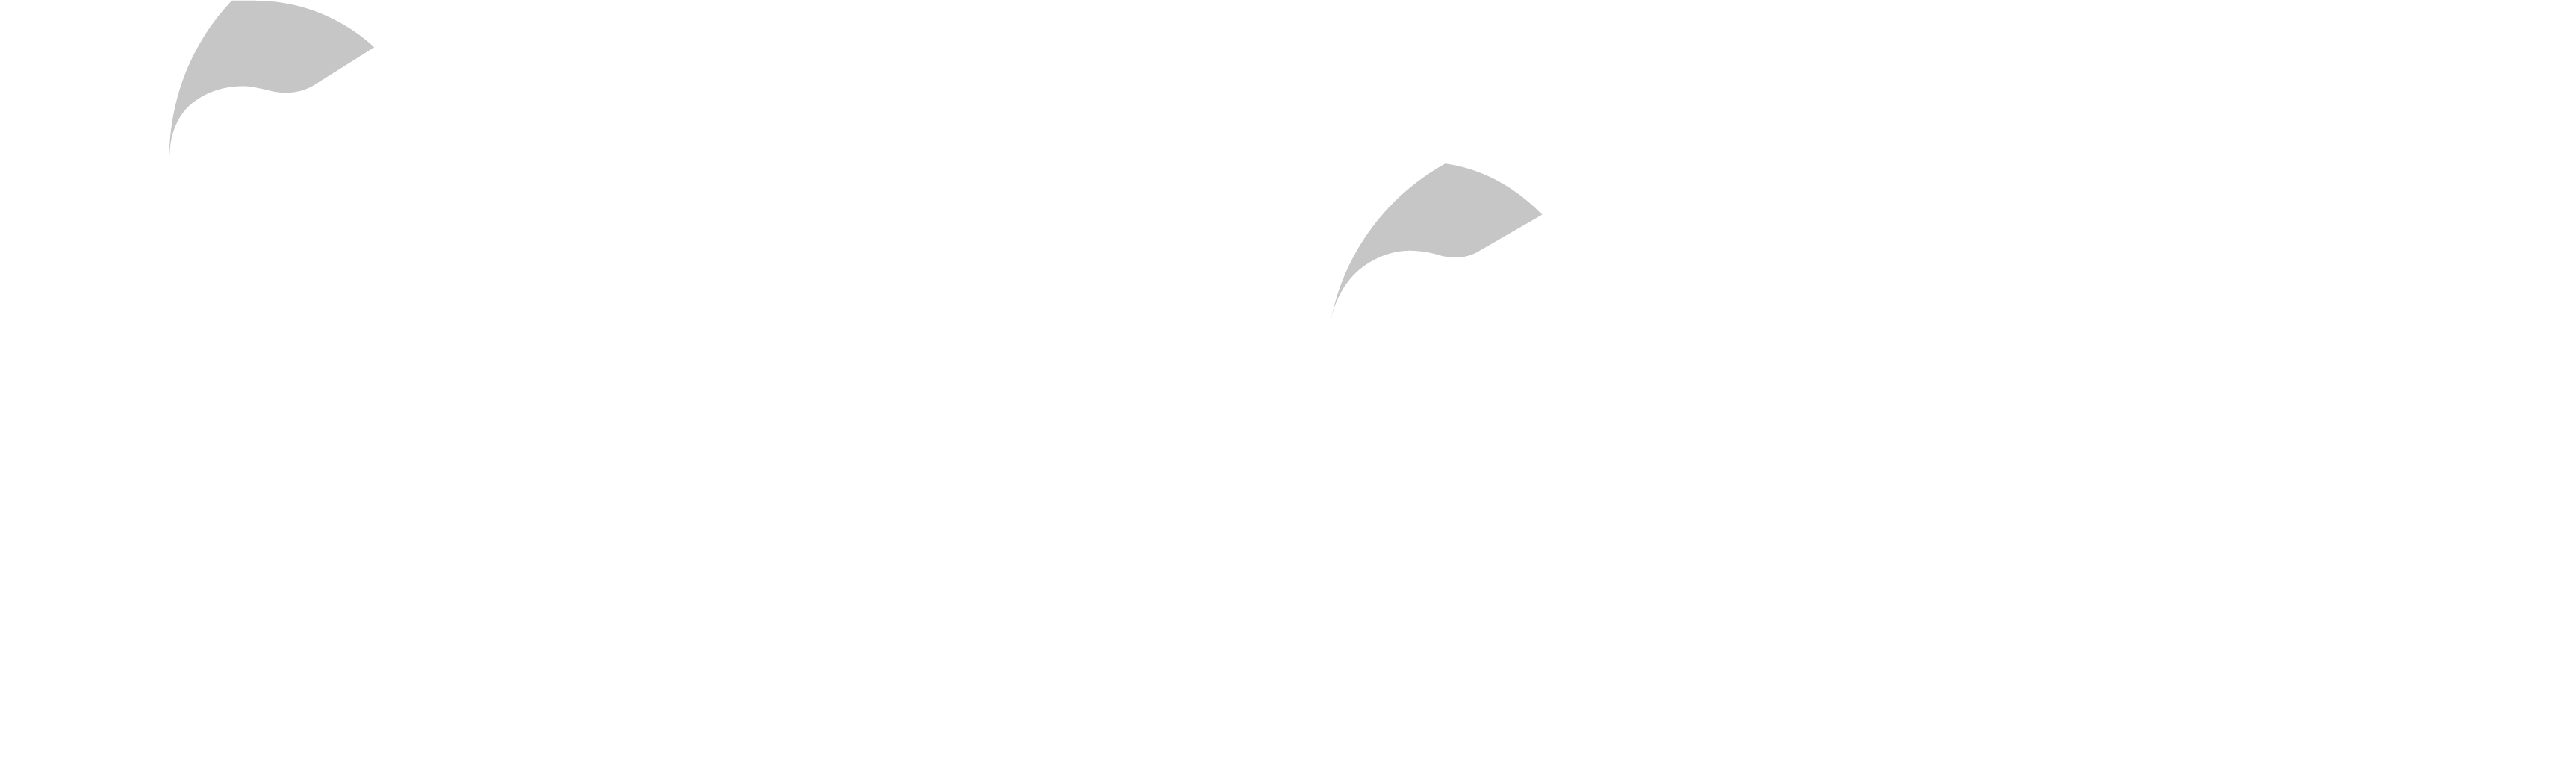 Falagrett-logo-white